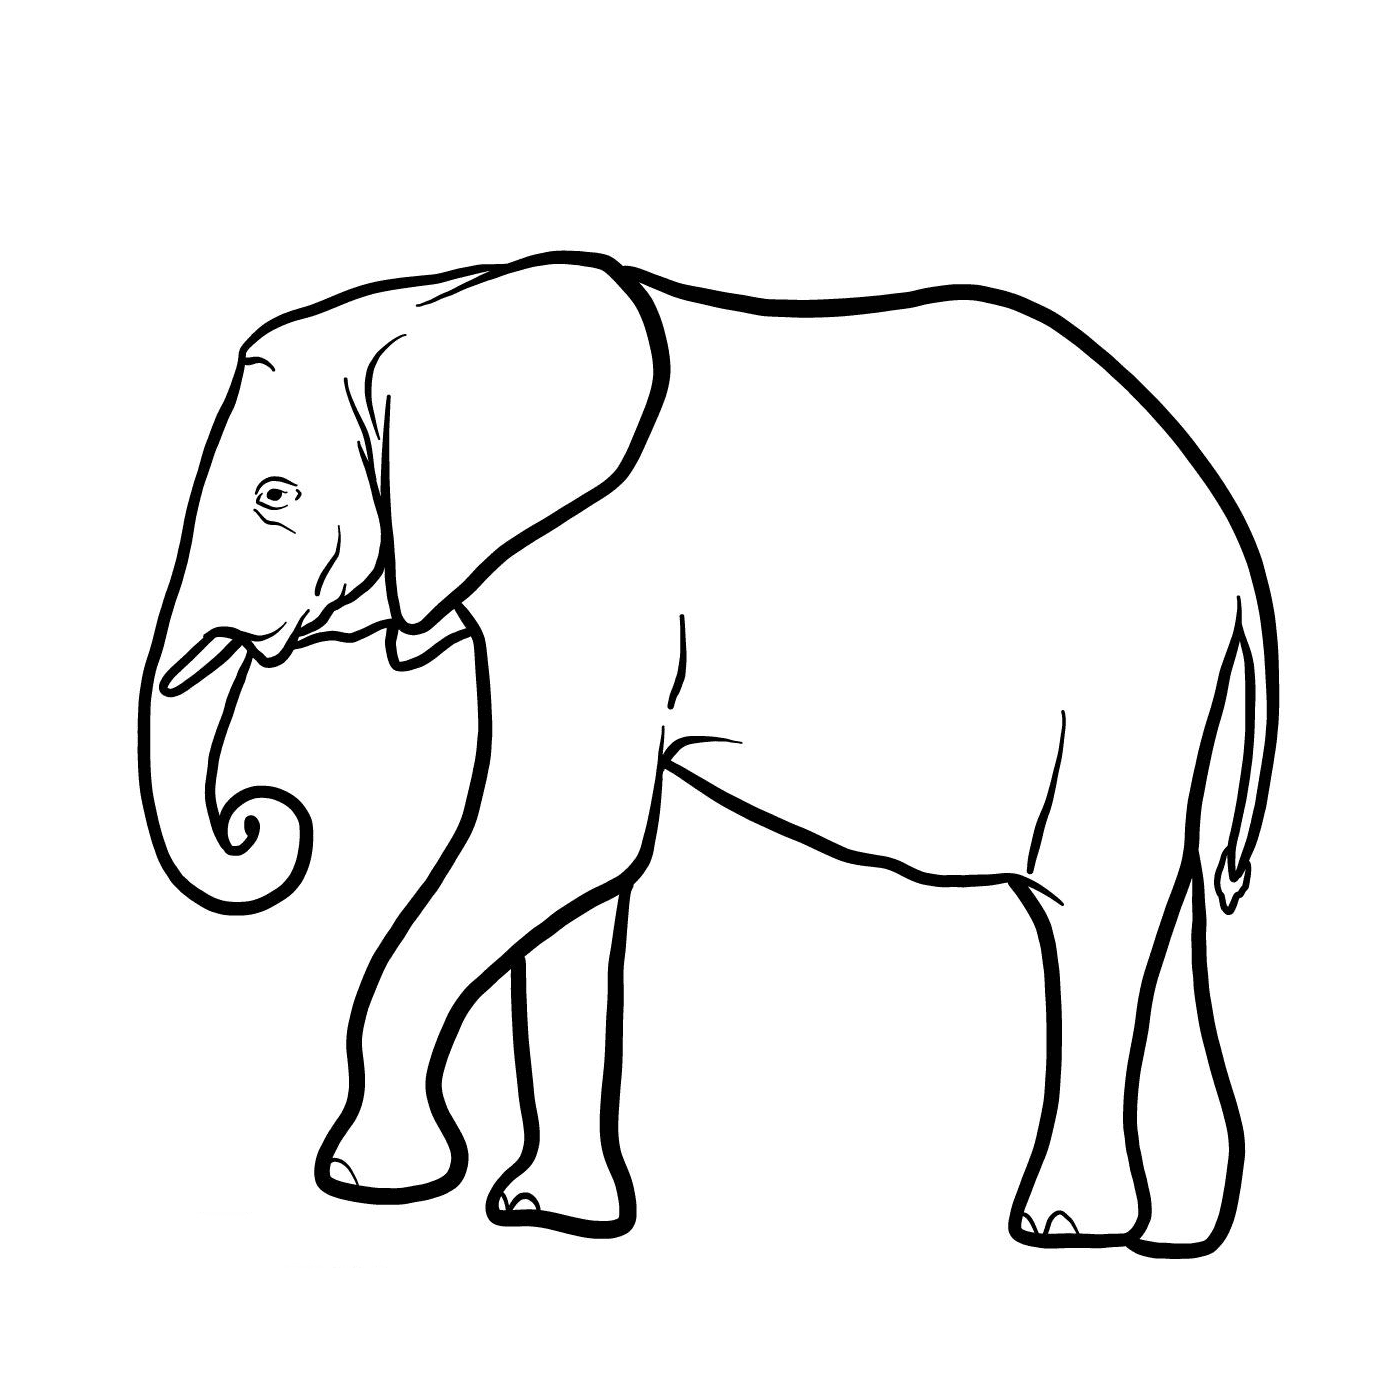  Um elefante com um tronco longo 